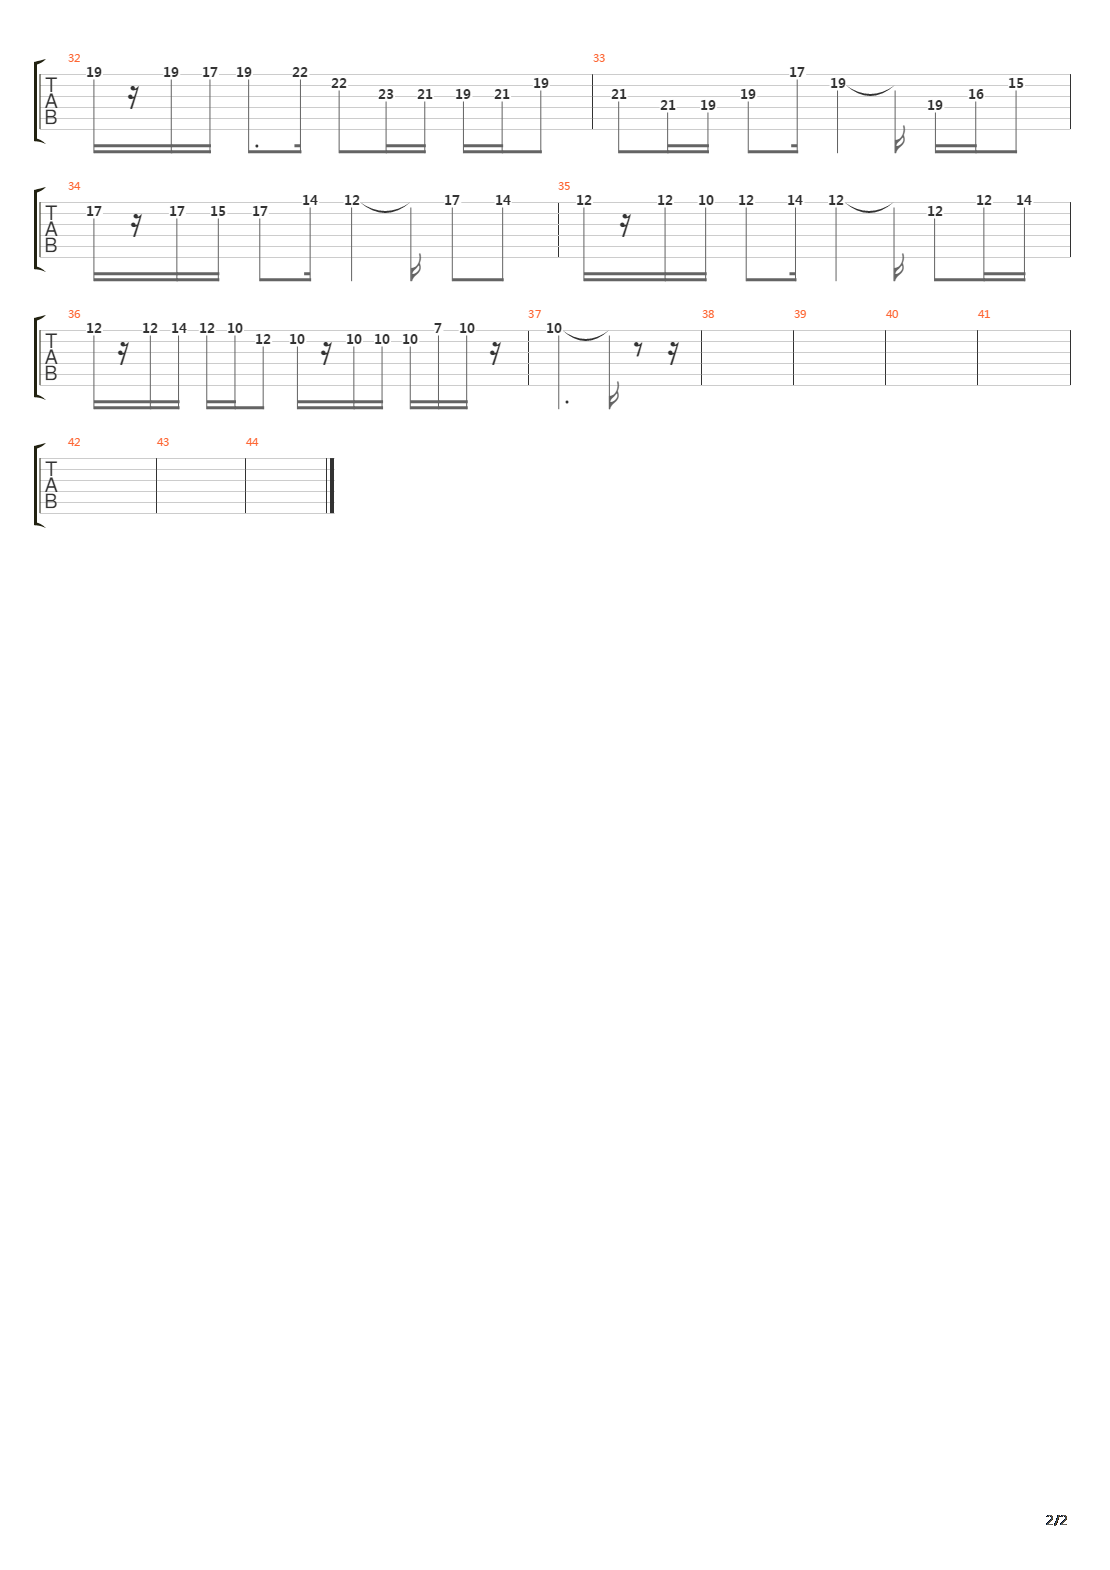 梦里水乡-江珊五线谱预览1-钢琴谱文件（五线谱、双手简谱、数字谱、Midi、PDF）免费下载